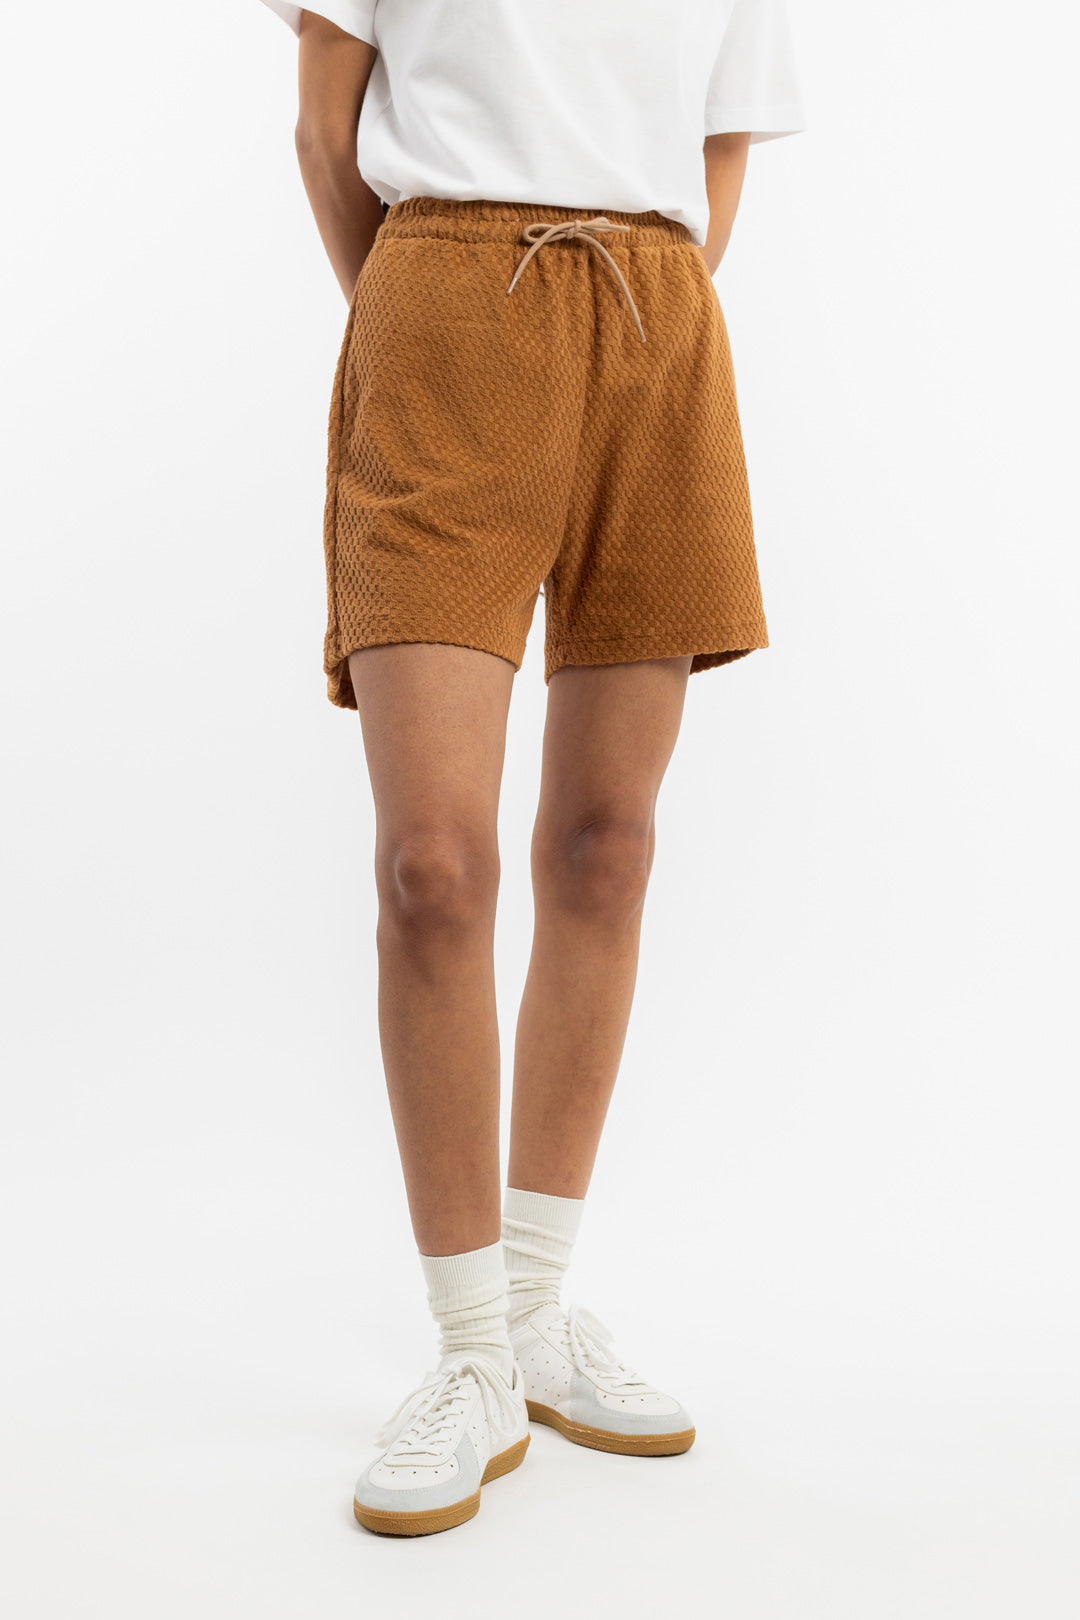 Karamellfarbene kurze Hose aus Bio-Baumwolle von Rotholz